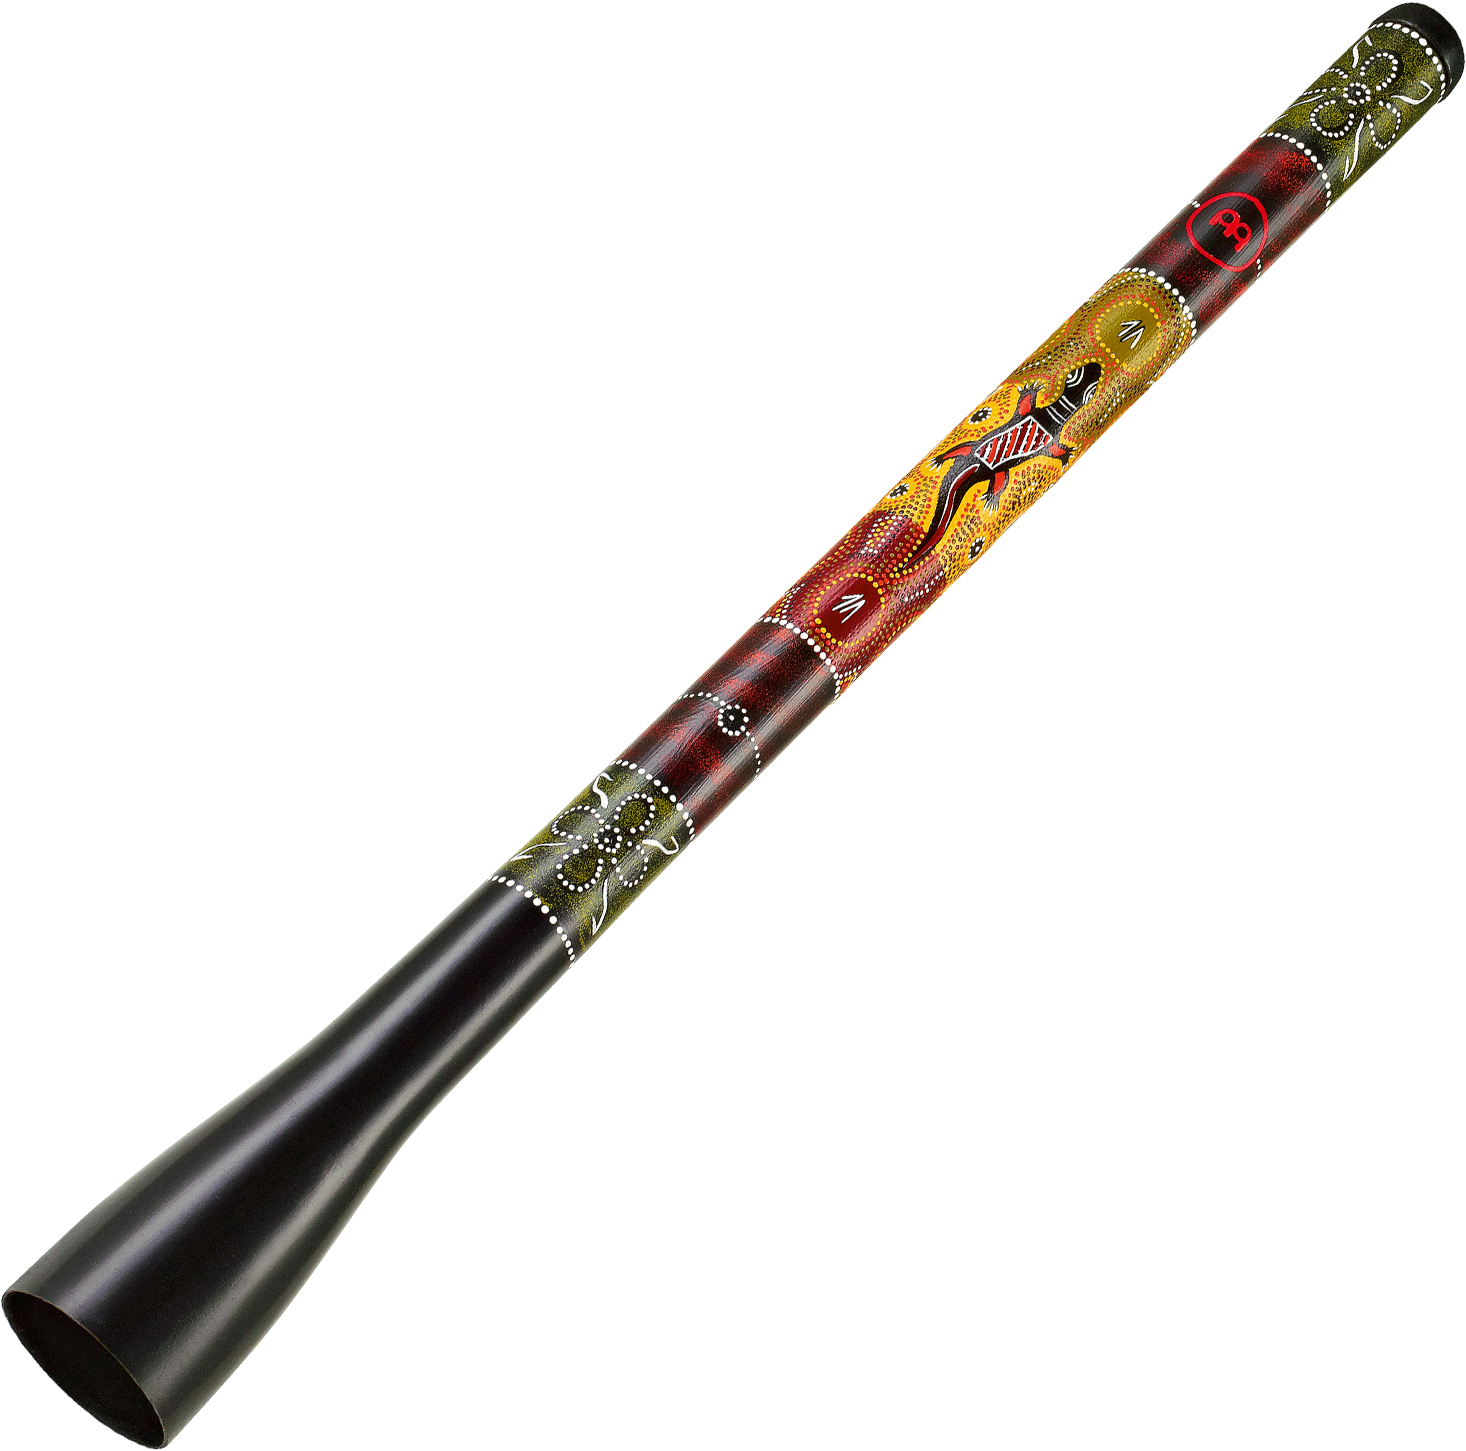 Didgeridoo Imagen Transparente